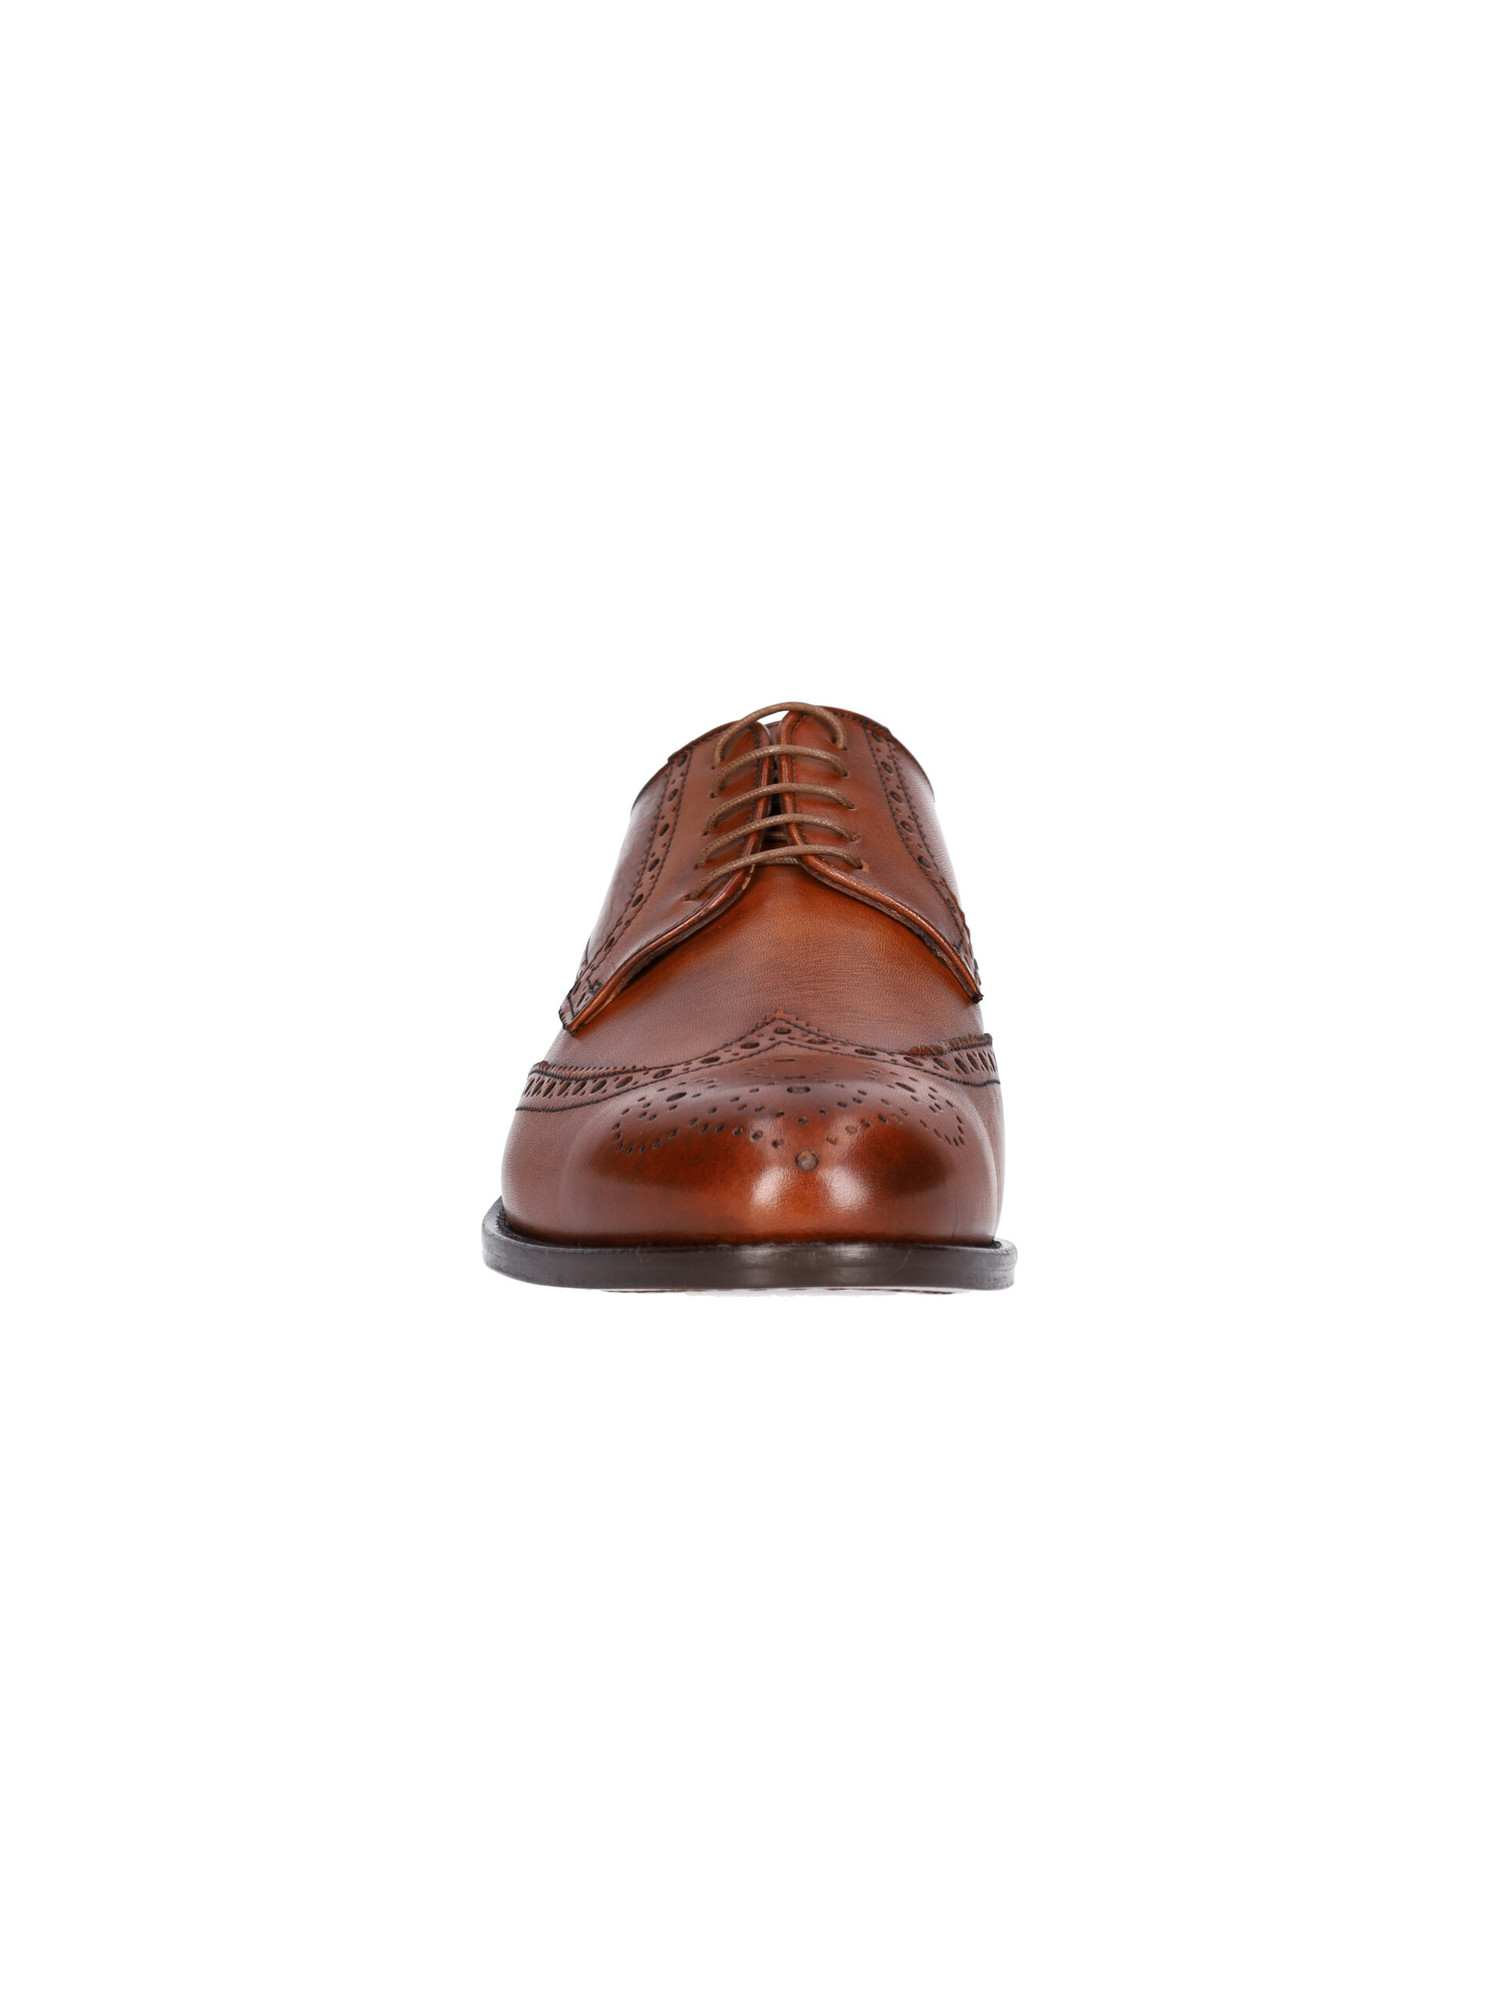 scarpa-elegante-mercanti-fiorentini-da-uomo-marrone-1a8c90